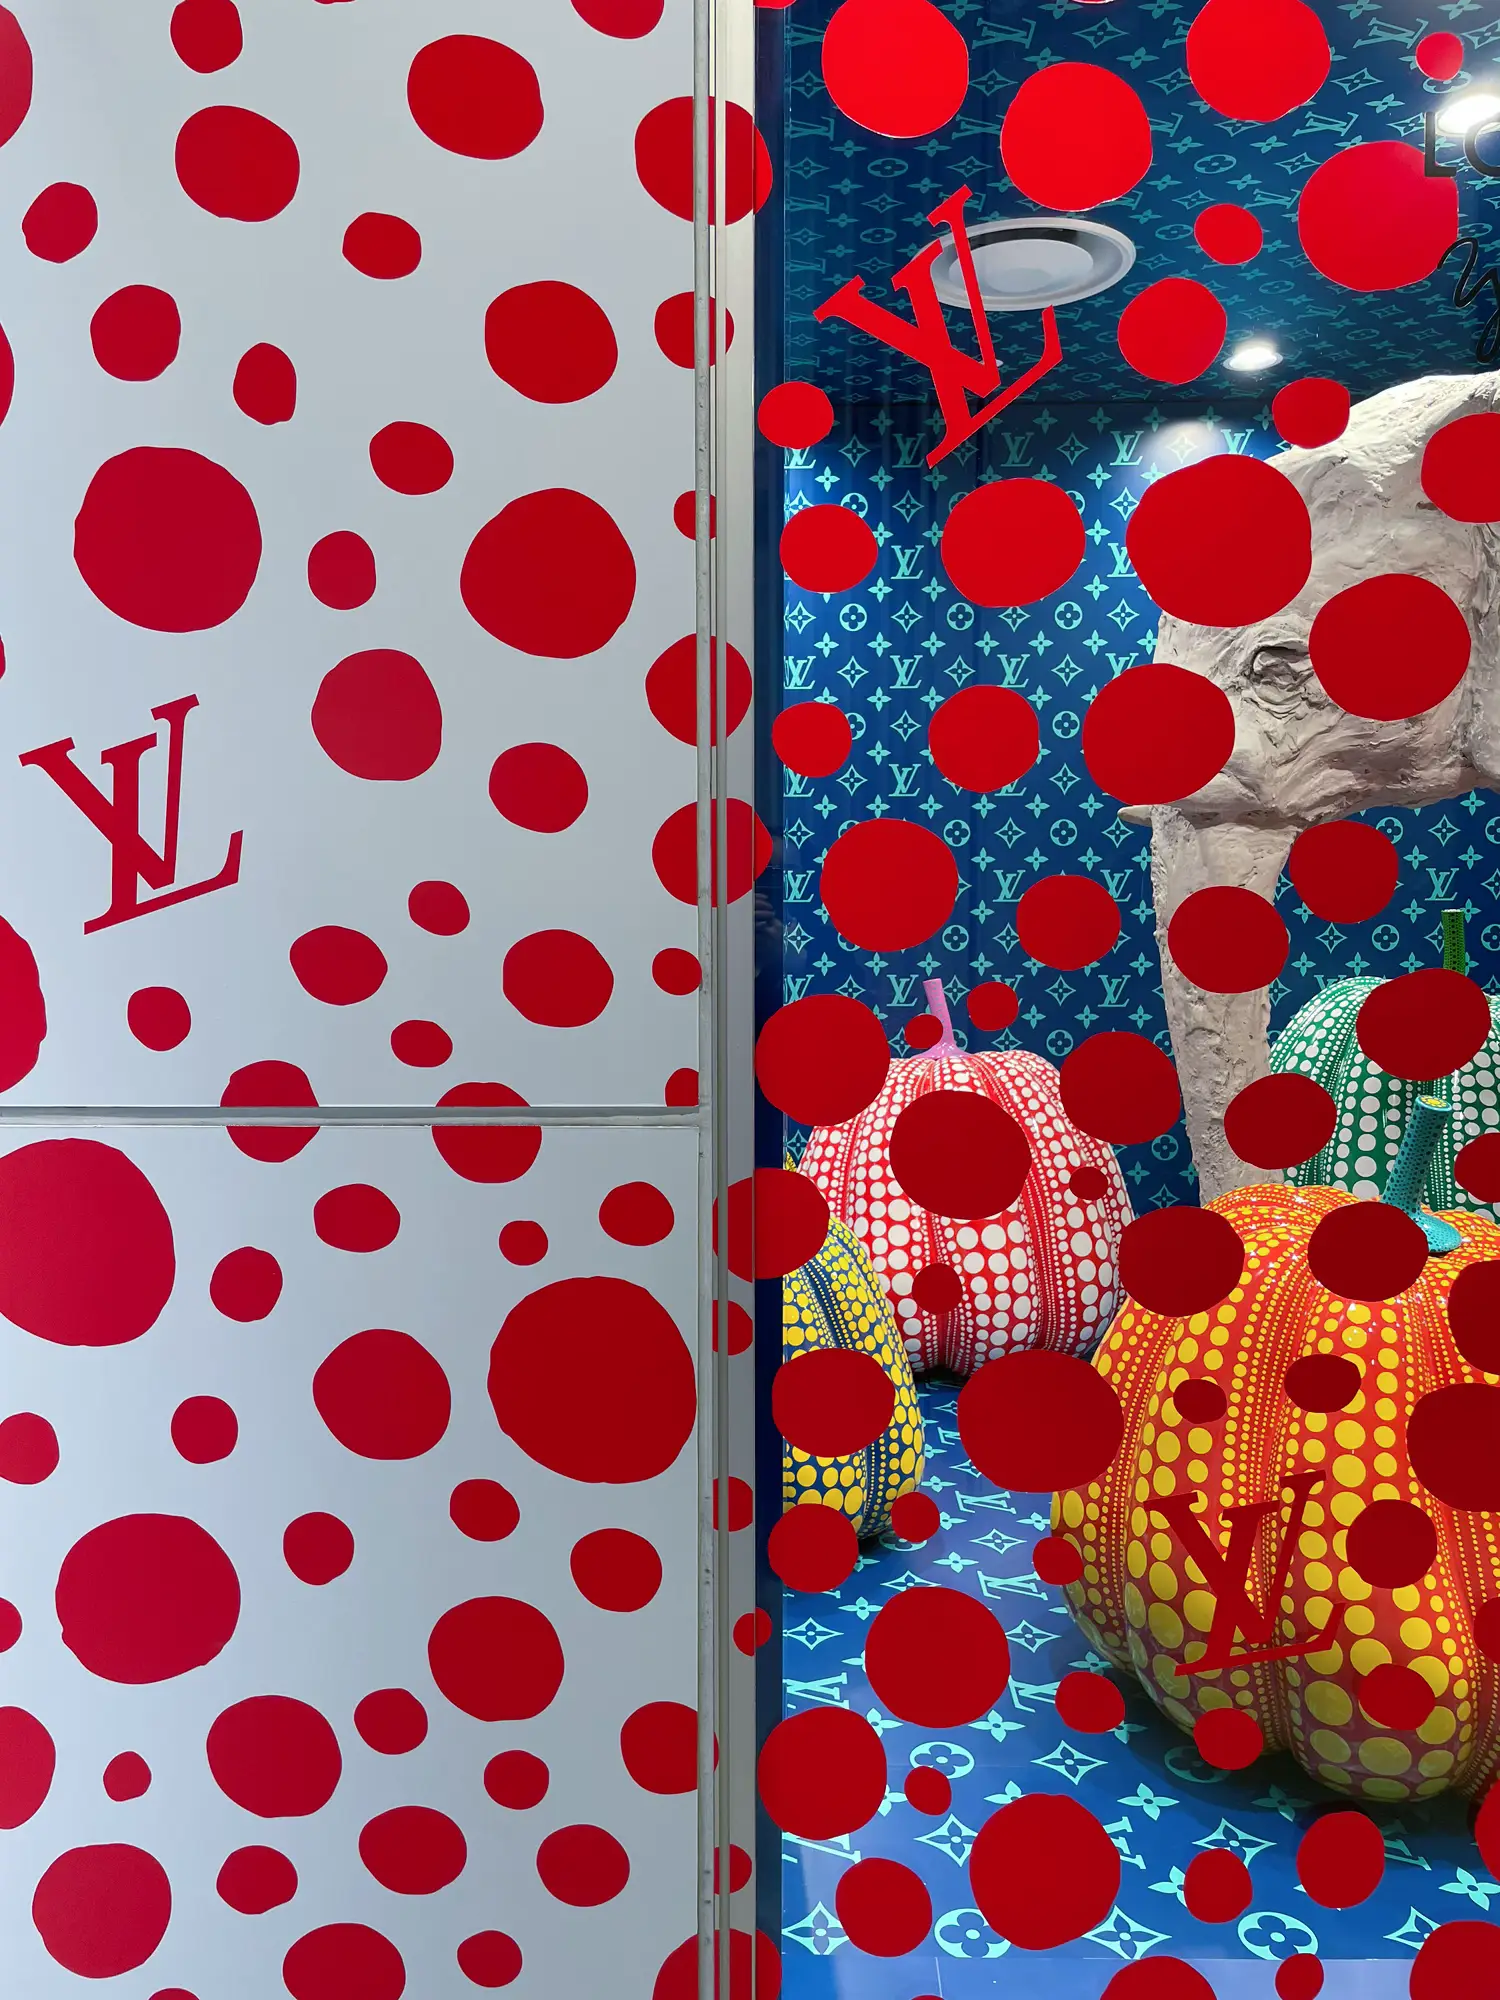 Vuitton vs Kusama in Mayfair • Inspiring City